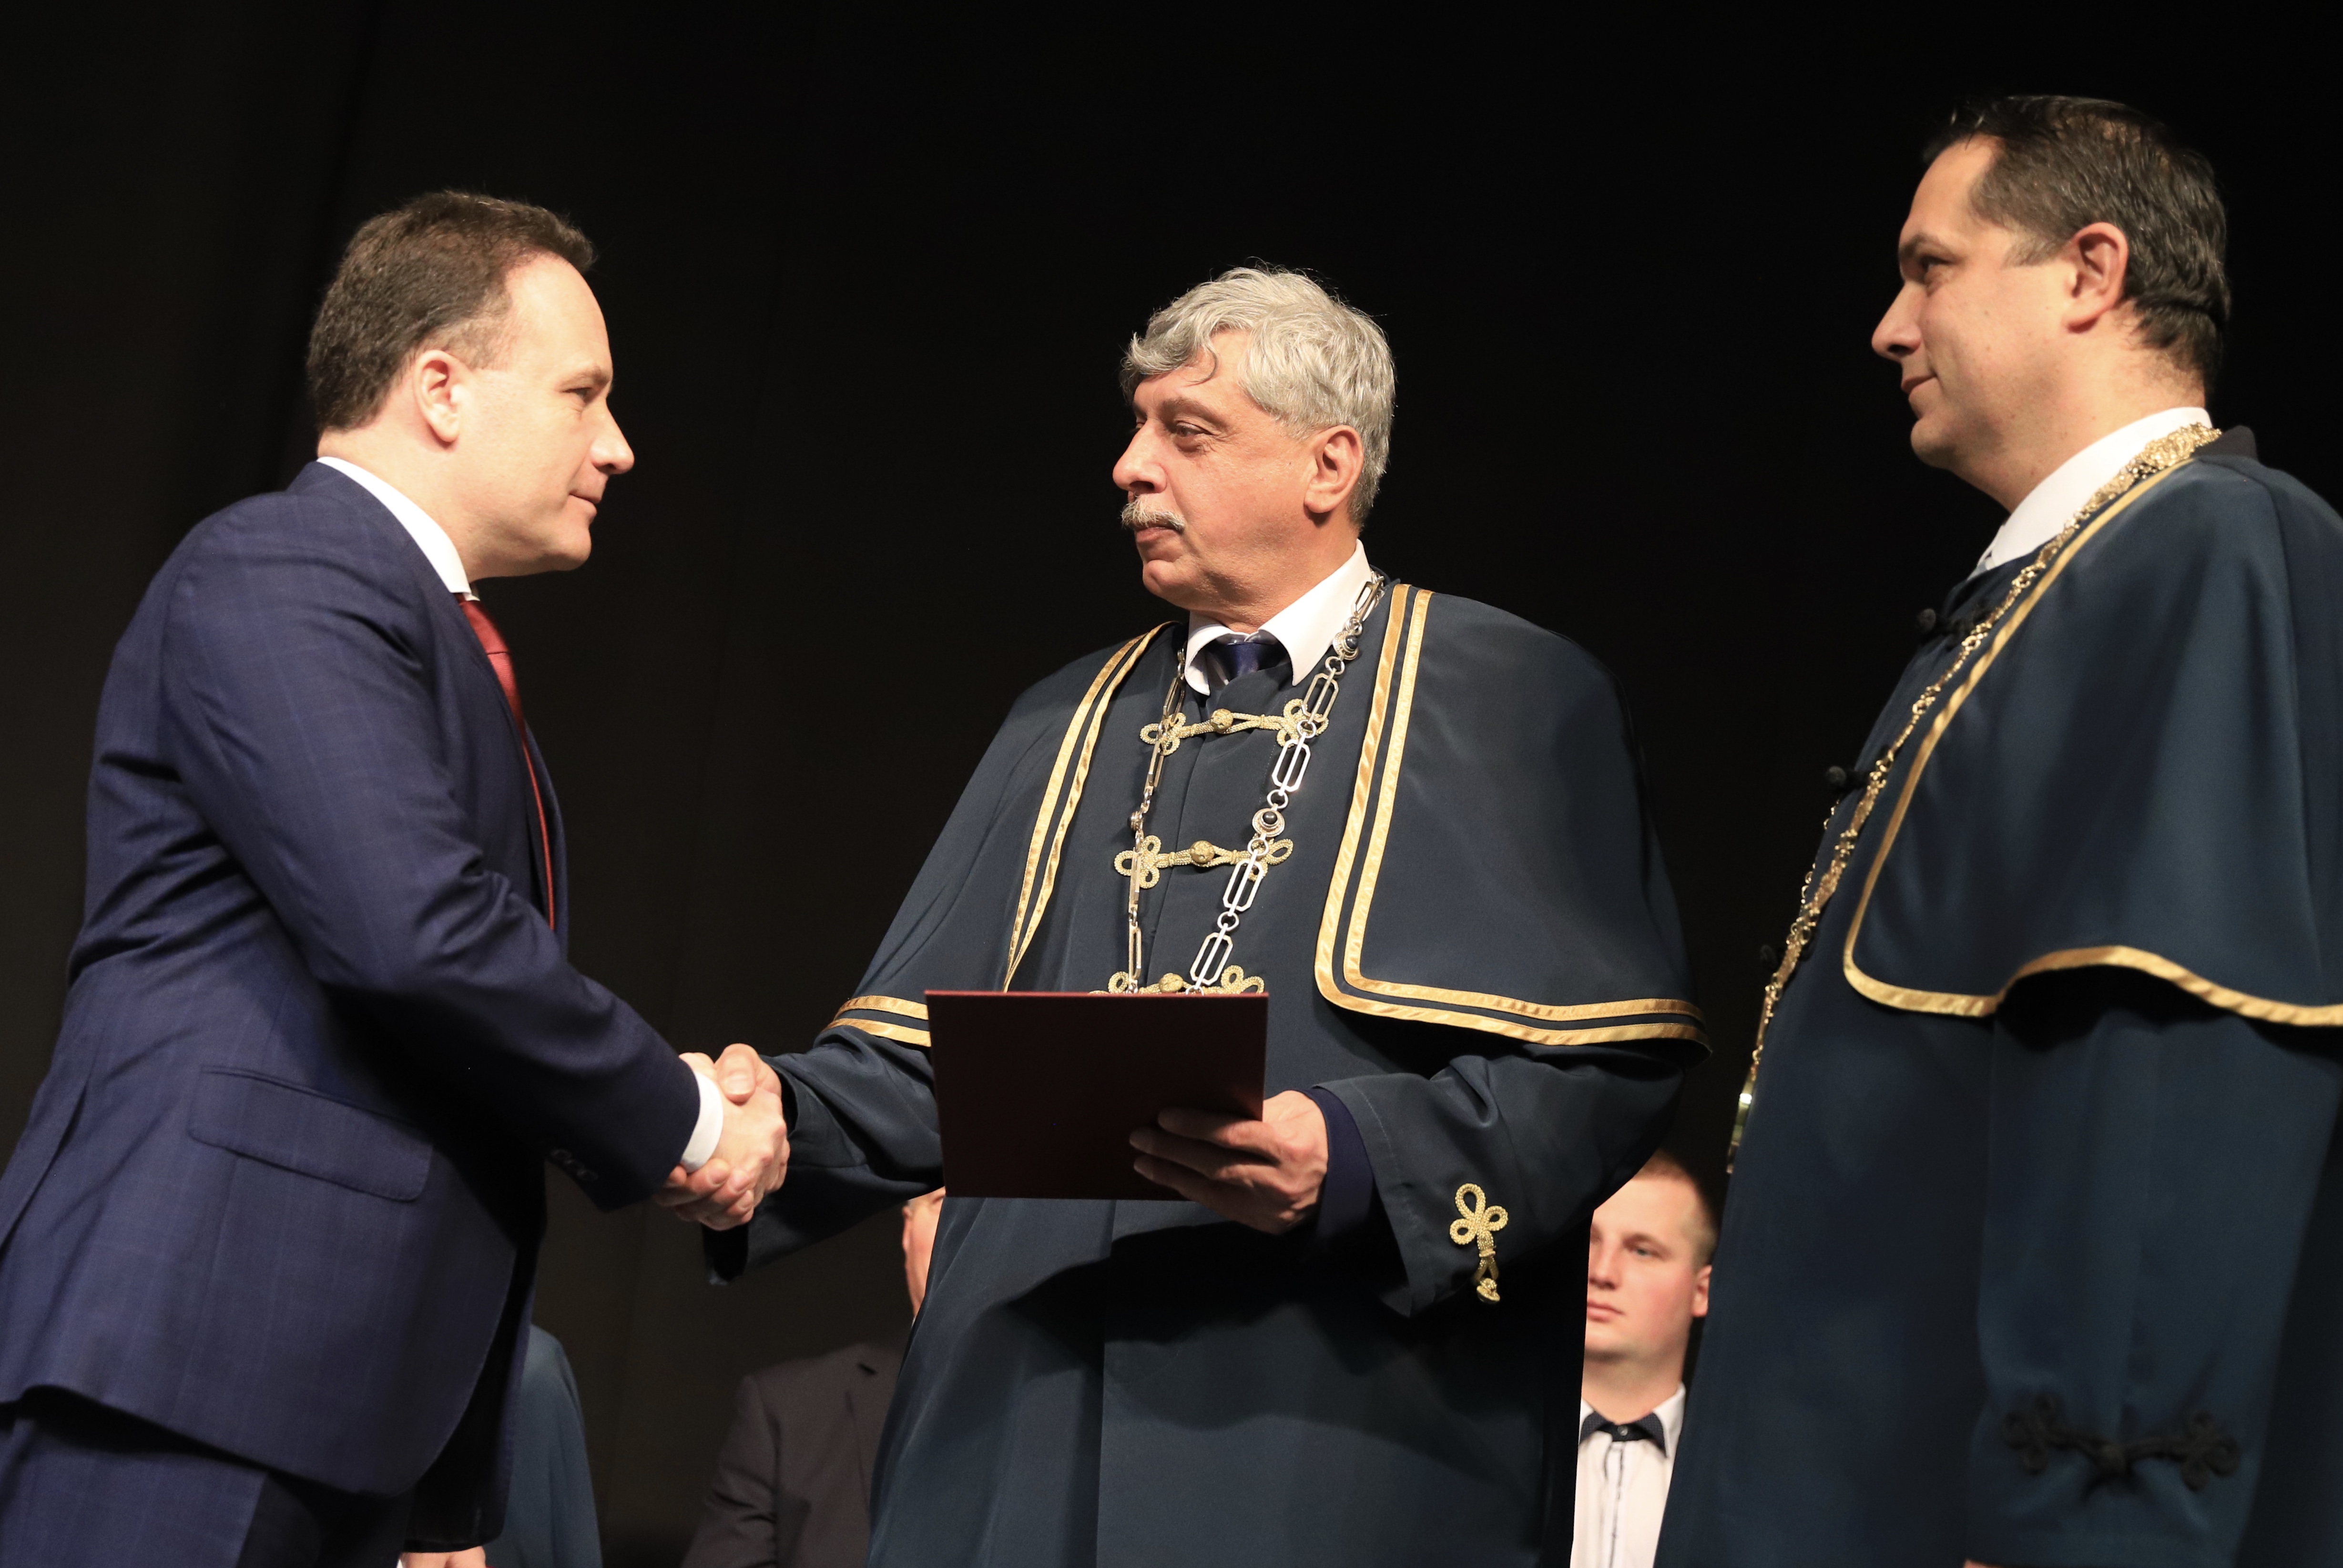 A Szent István Egyetem címzetes egyetemi docense lett dr. Takács Árpád